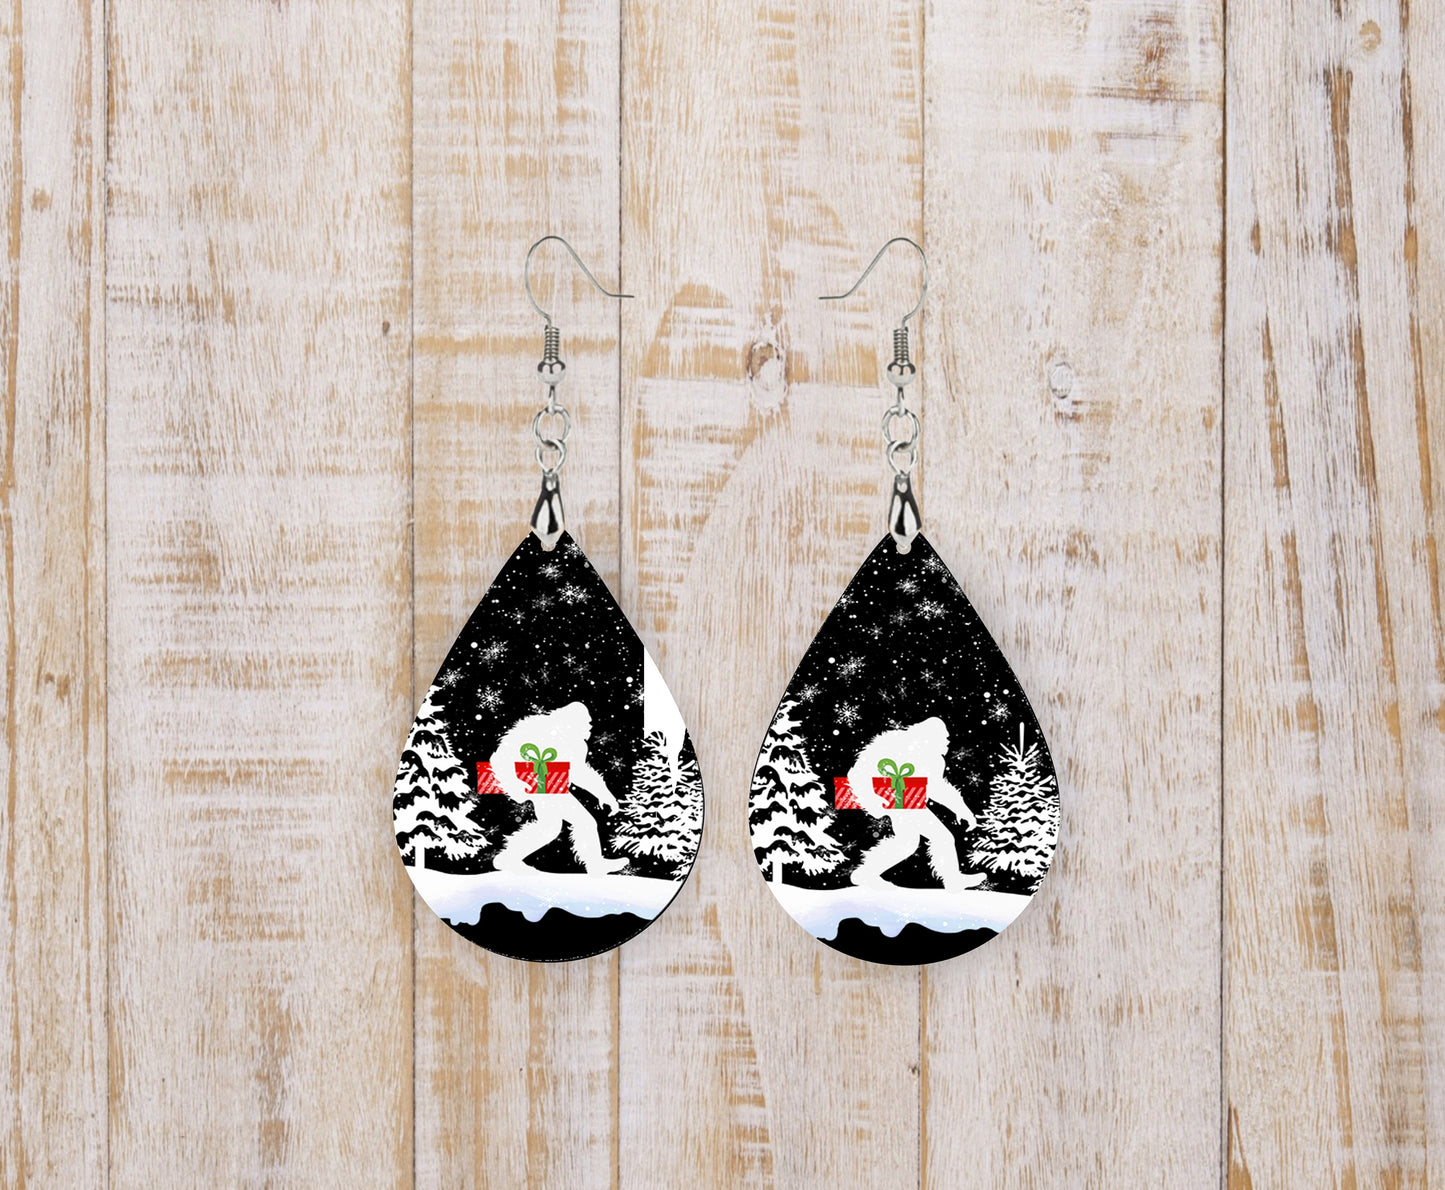 New Release Snowy Christmas Bigfoot Earrings Print Tear Drop Wood Dangle Earrings Hypoallergenic Jewelry